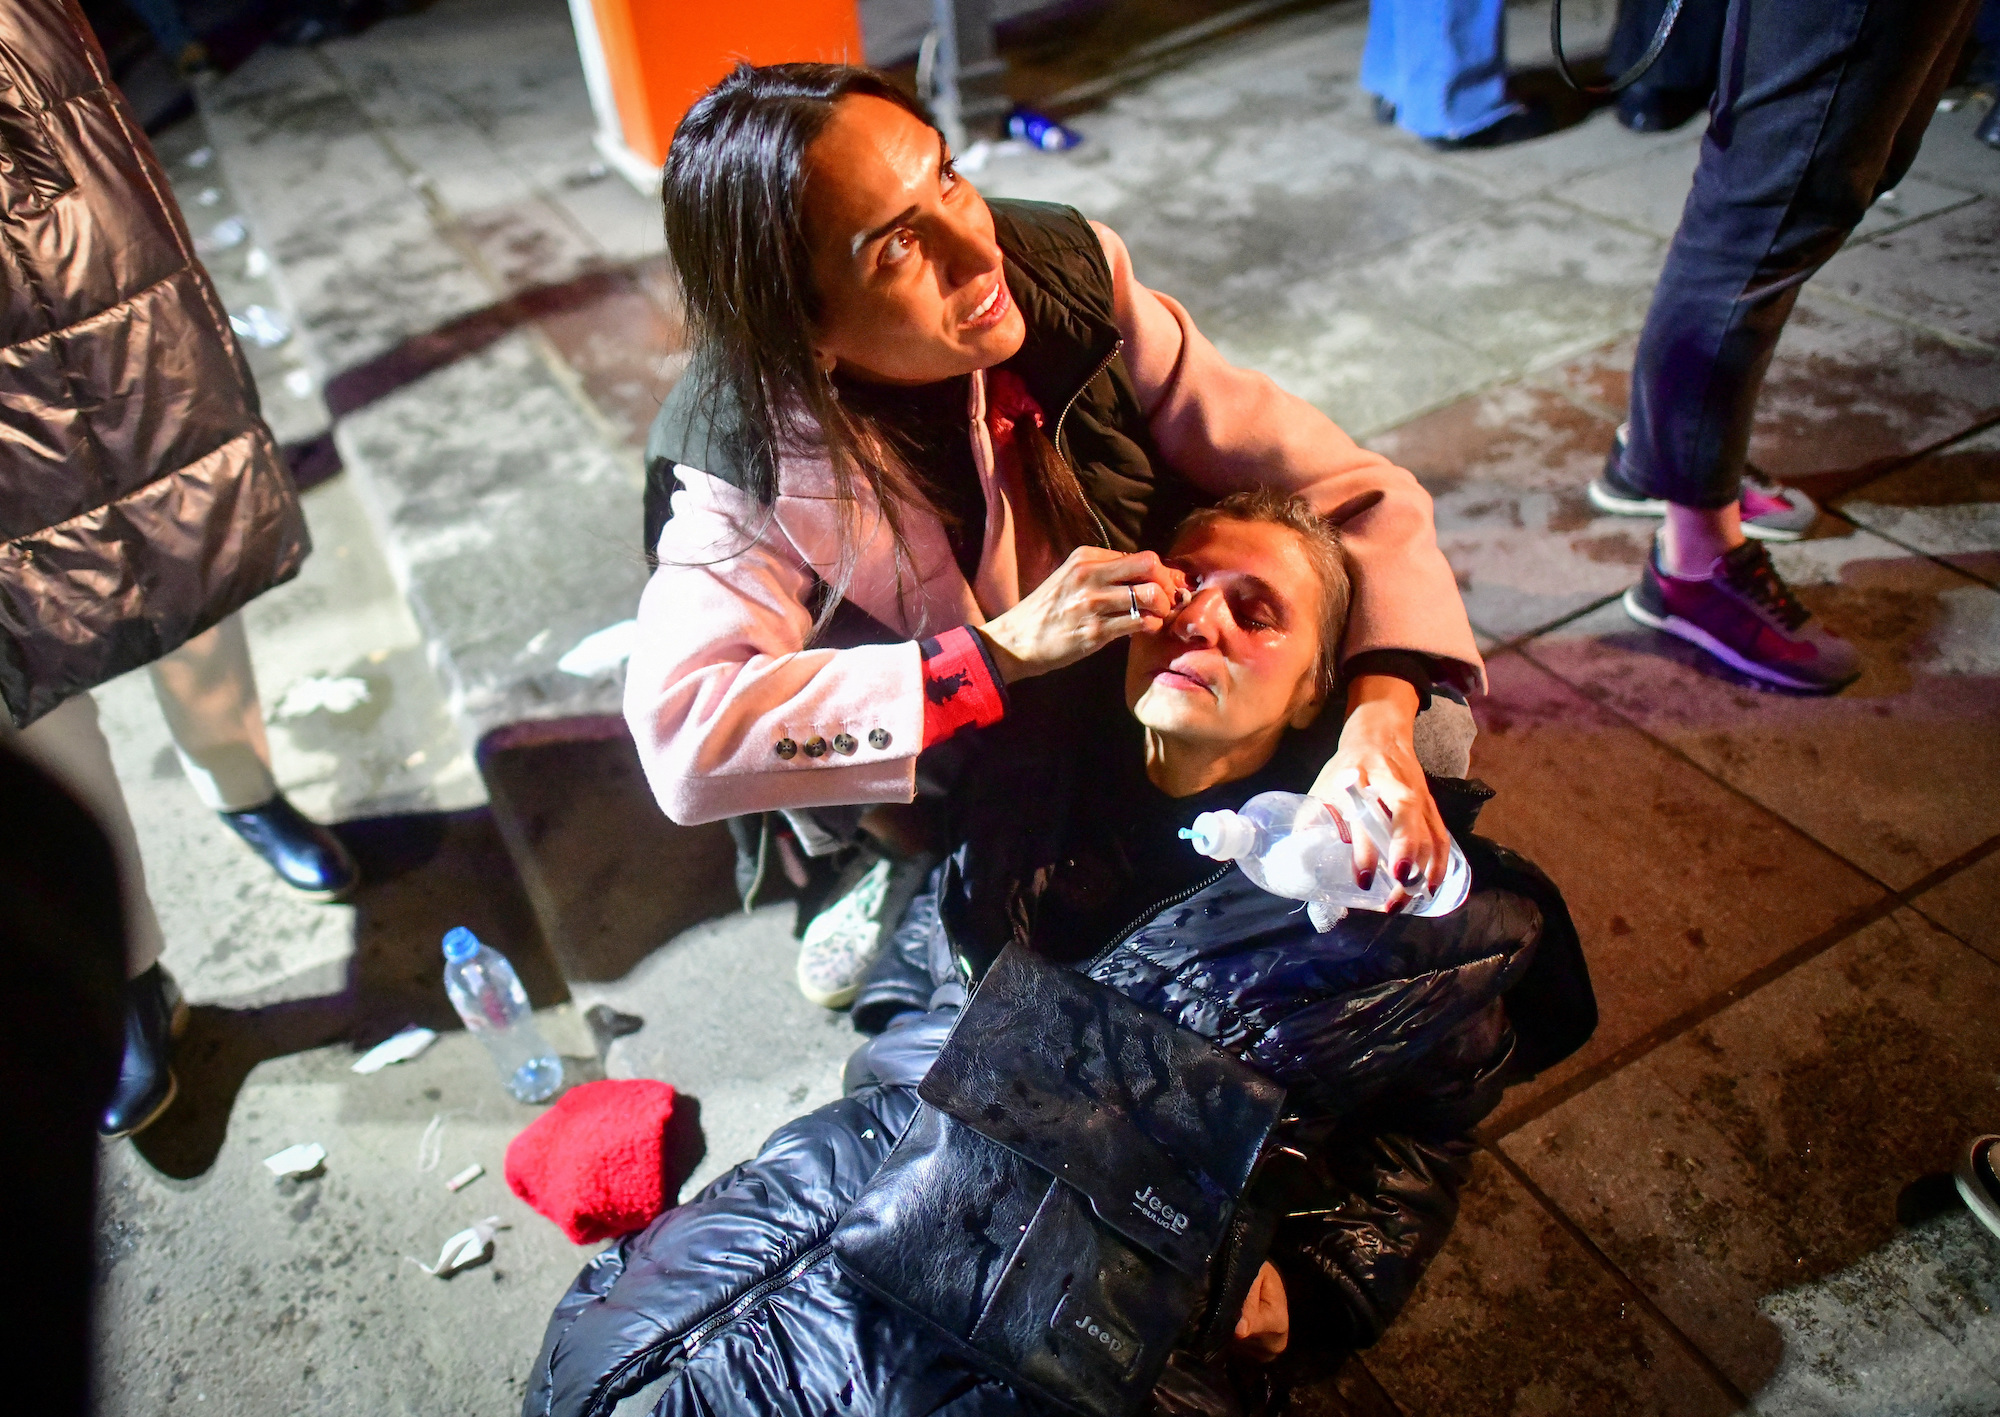 Una donna colpita dai gas lacrimogeni riceve assistenza medica per strada.